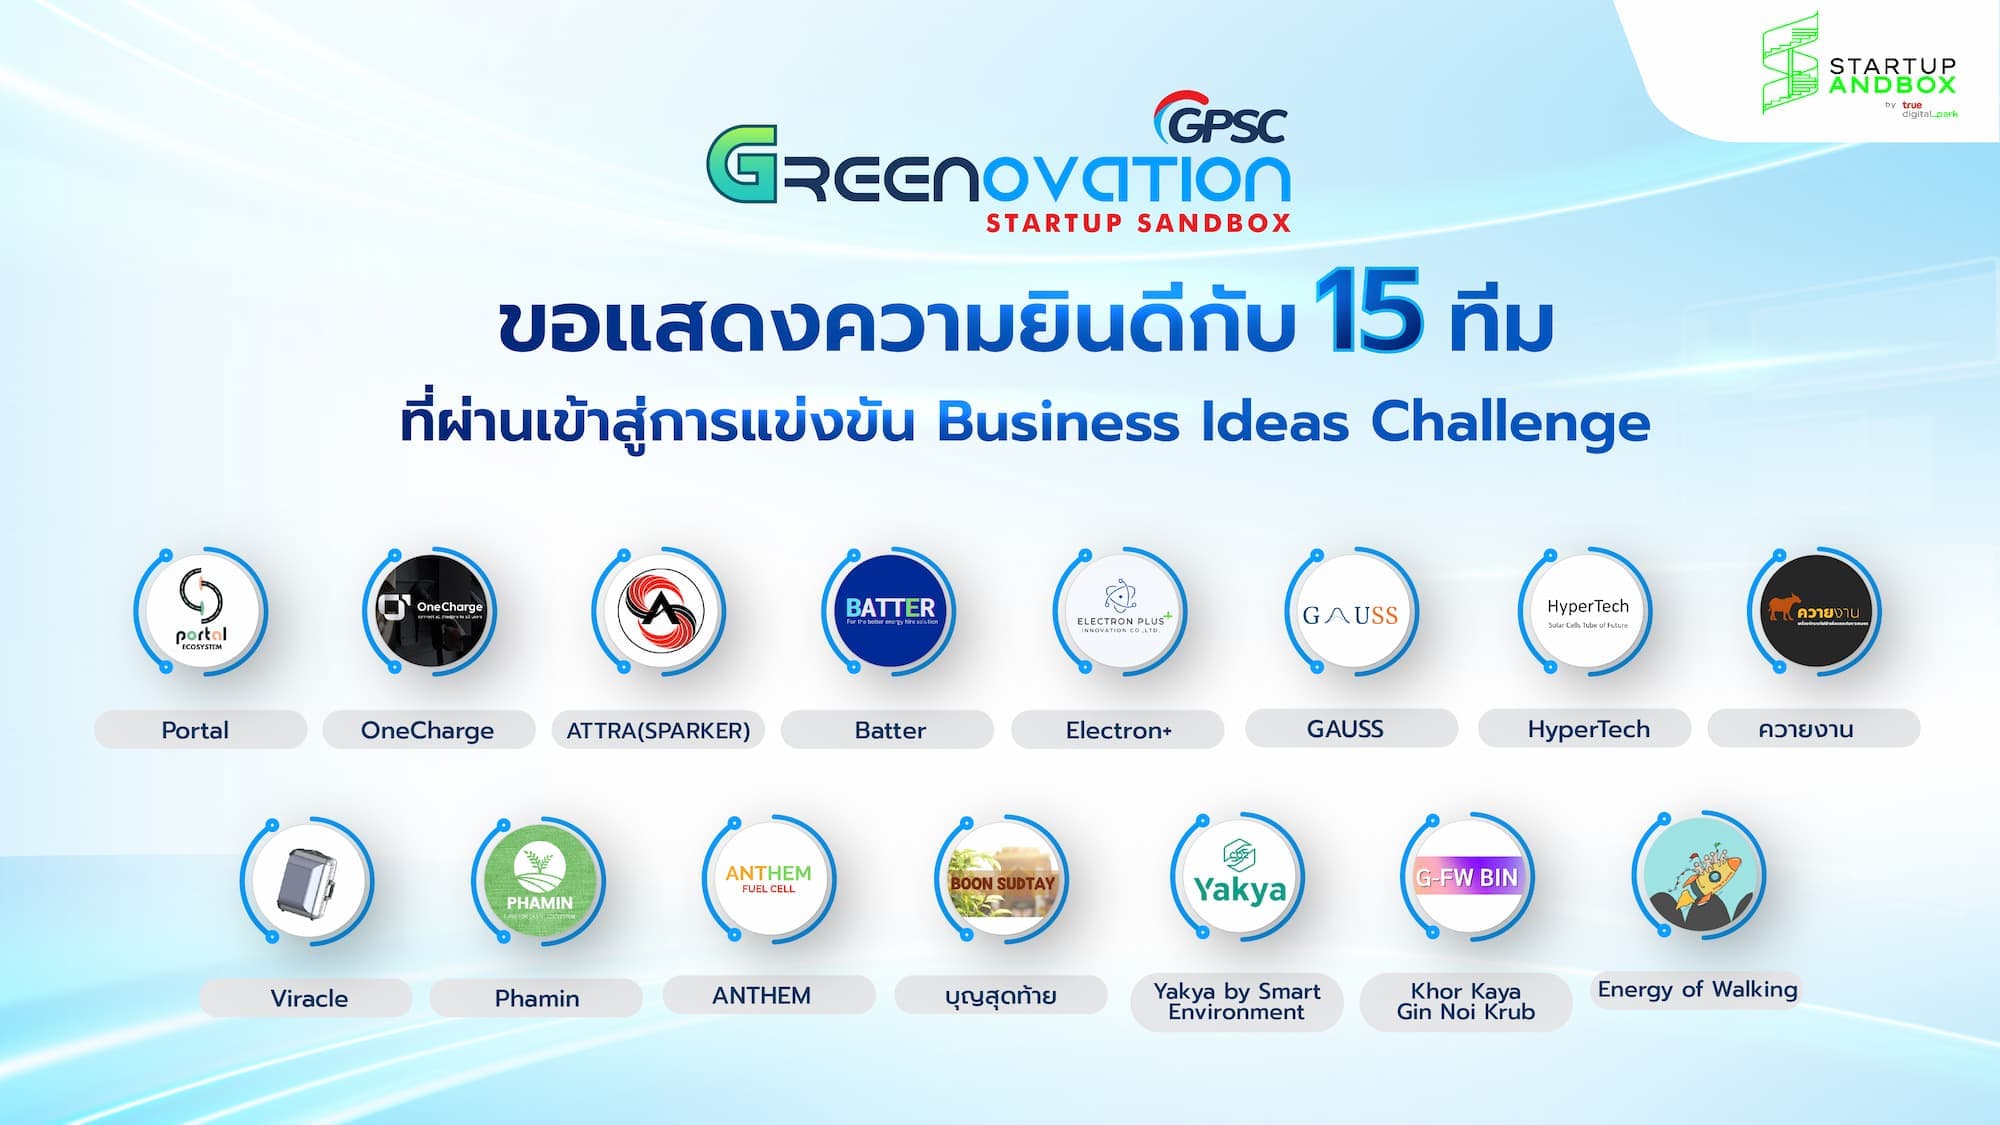 ประกาศ 15 ทีมผ่านเข้าแข่งขันโครงการ GPSC Greenovation Startup Sandbox